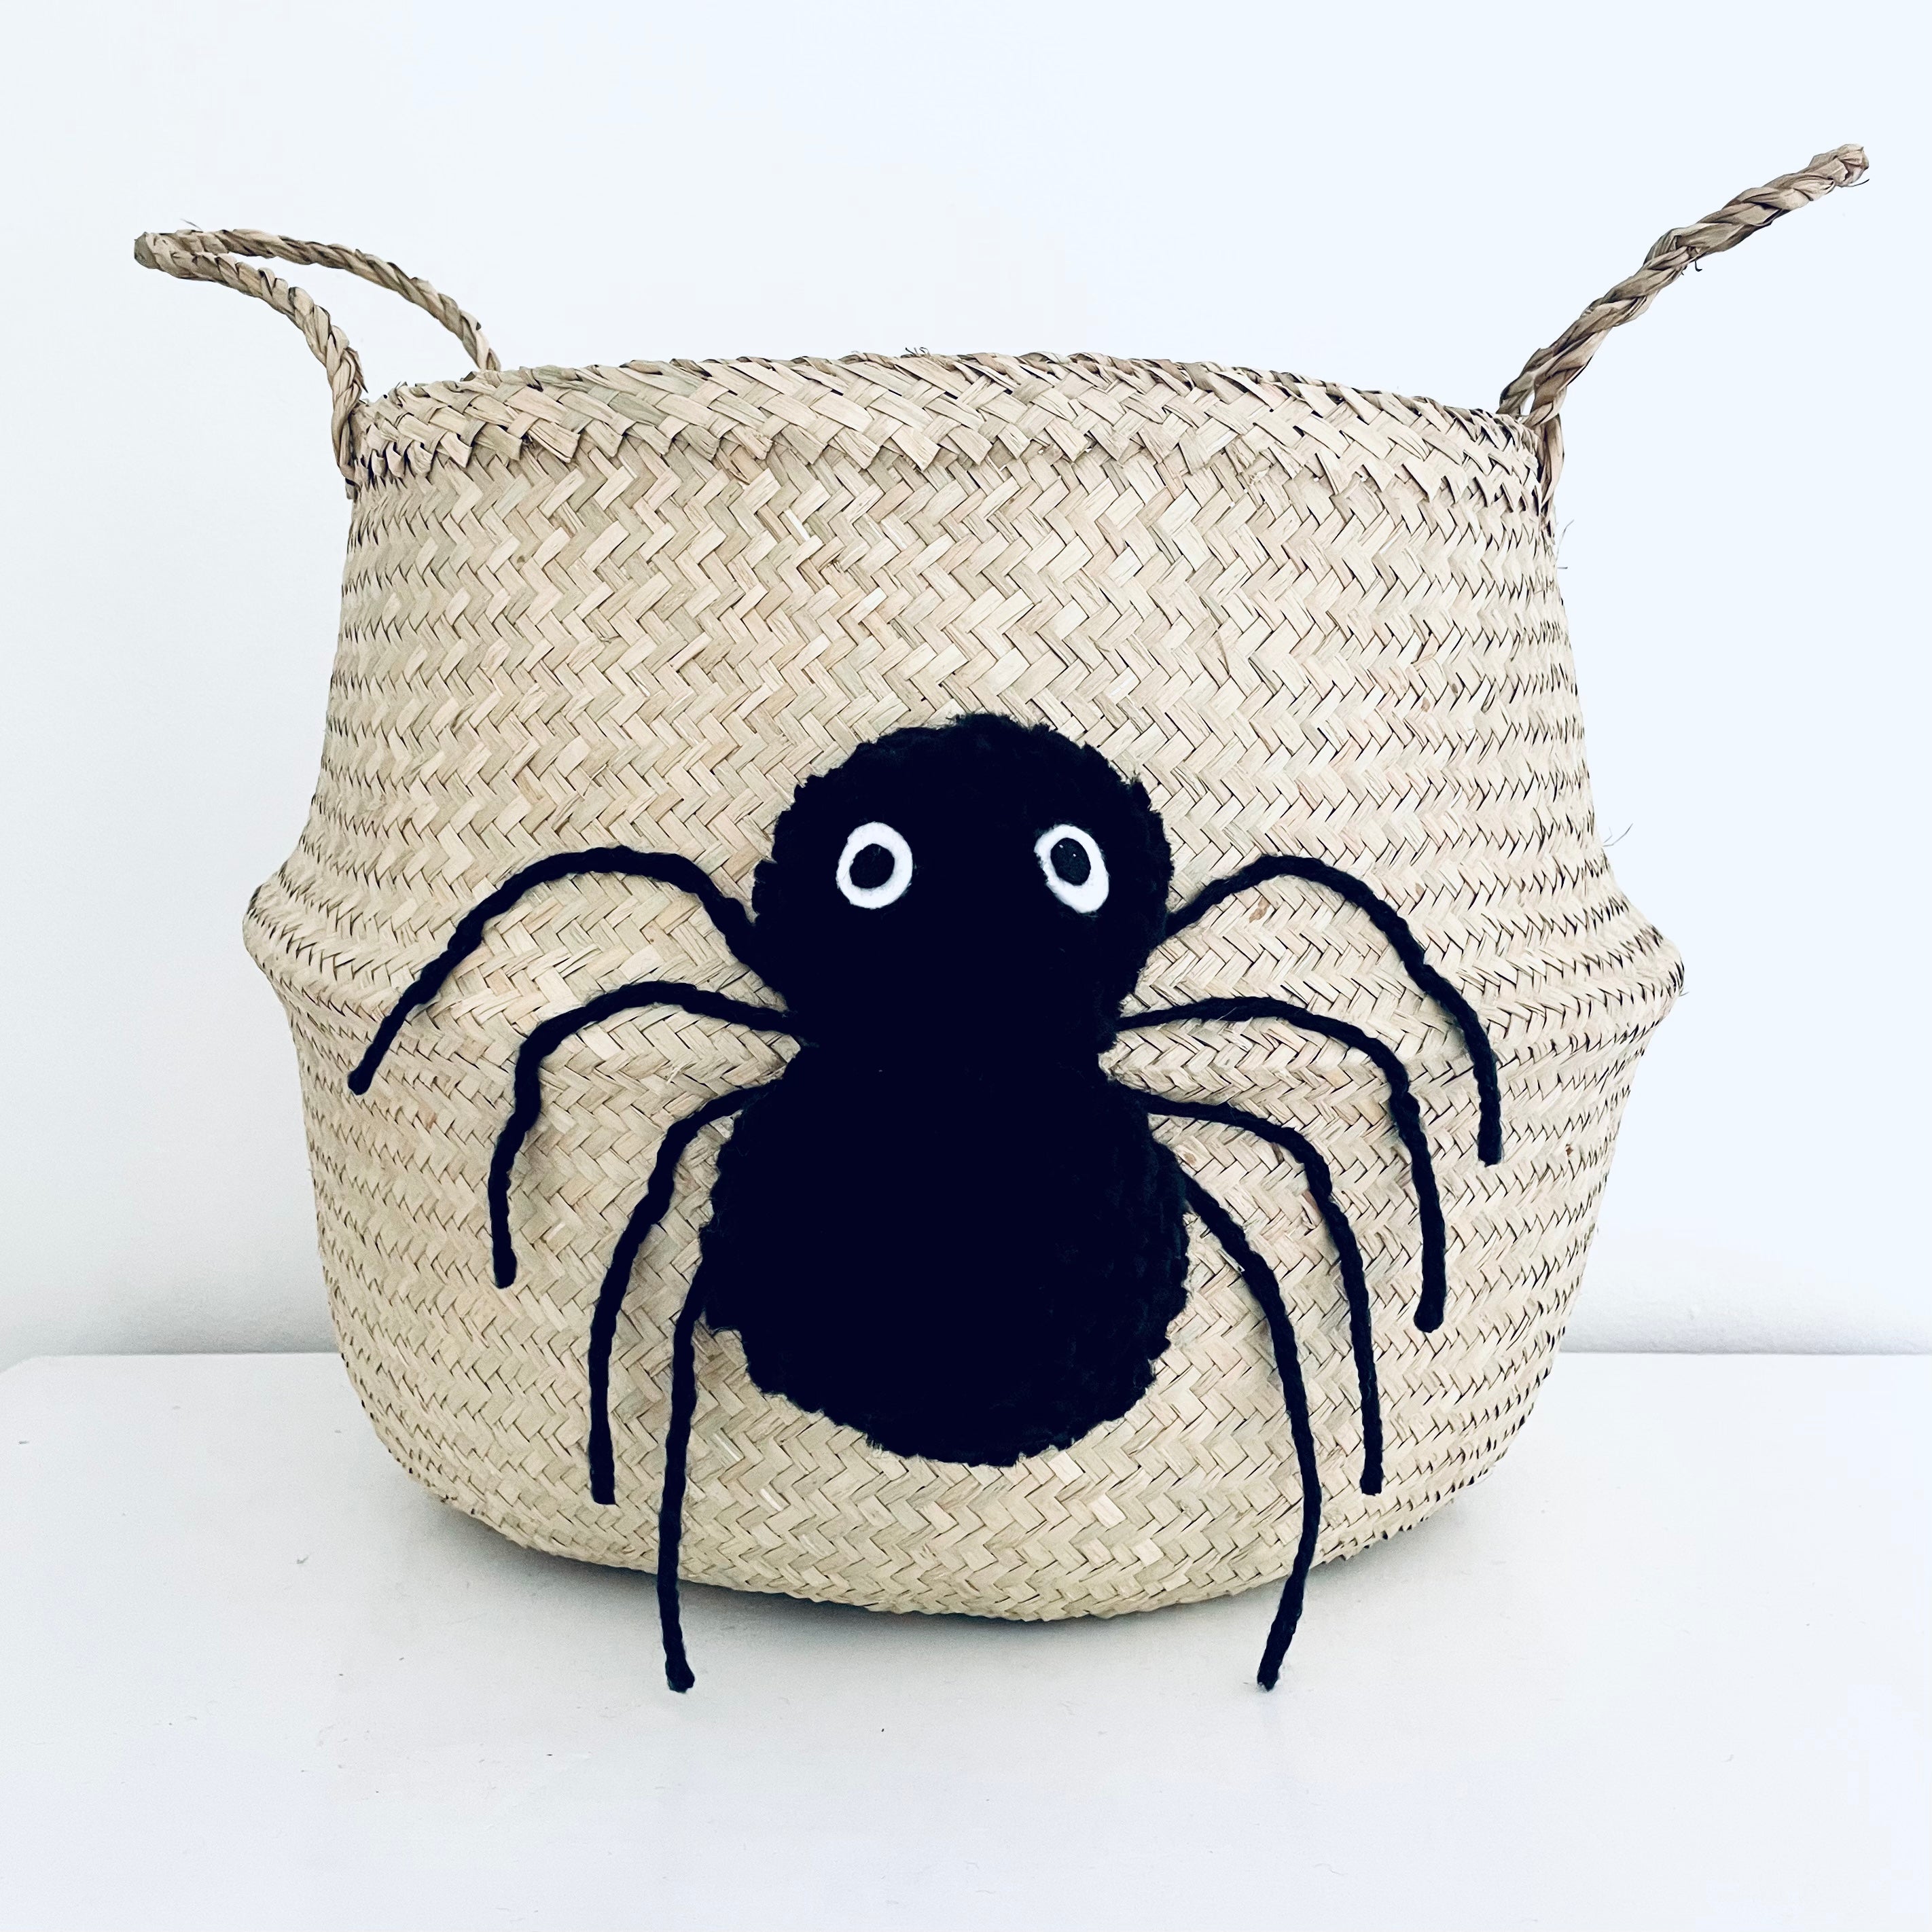 Spider basket - Extra Large